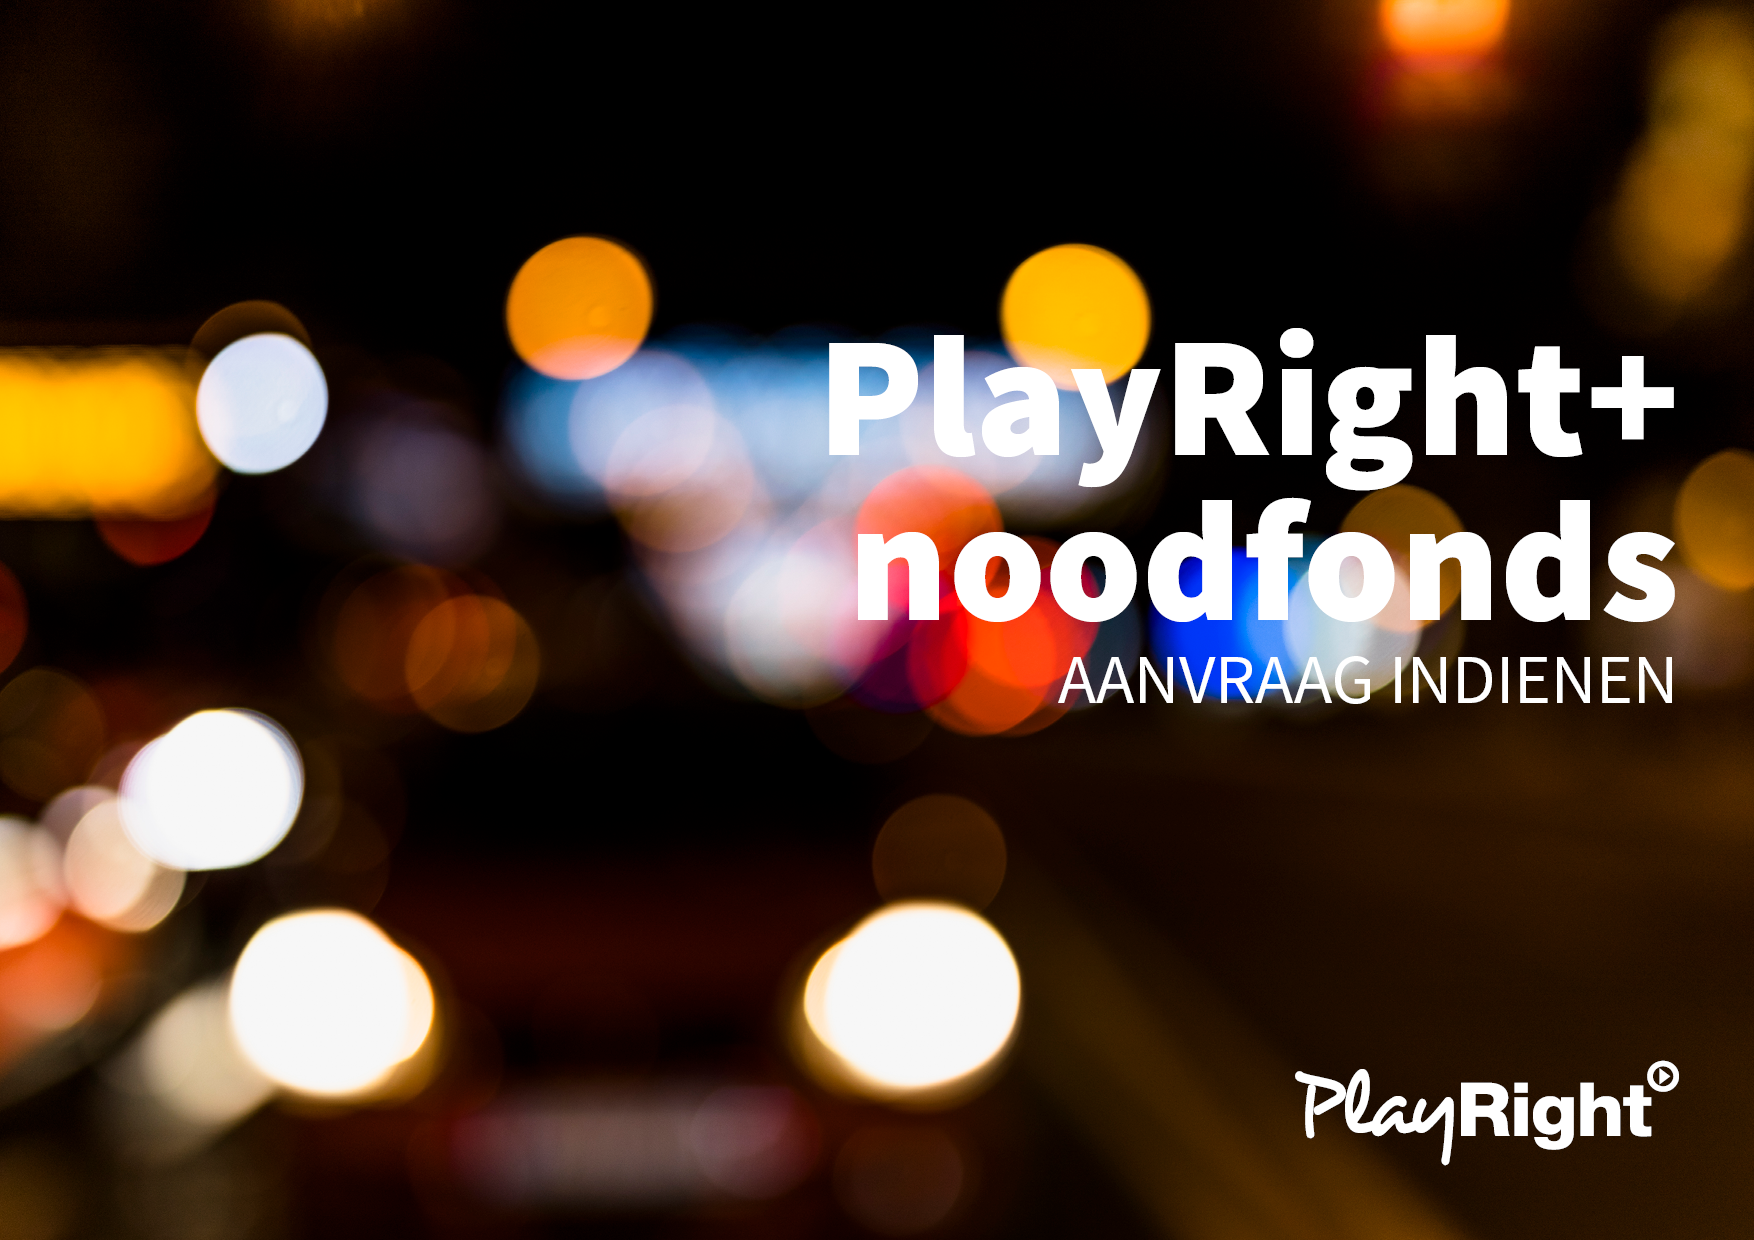 Noodfonds PlayRight+ voor kunstenaars: Aanvraag indienen